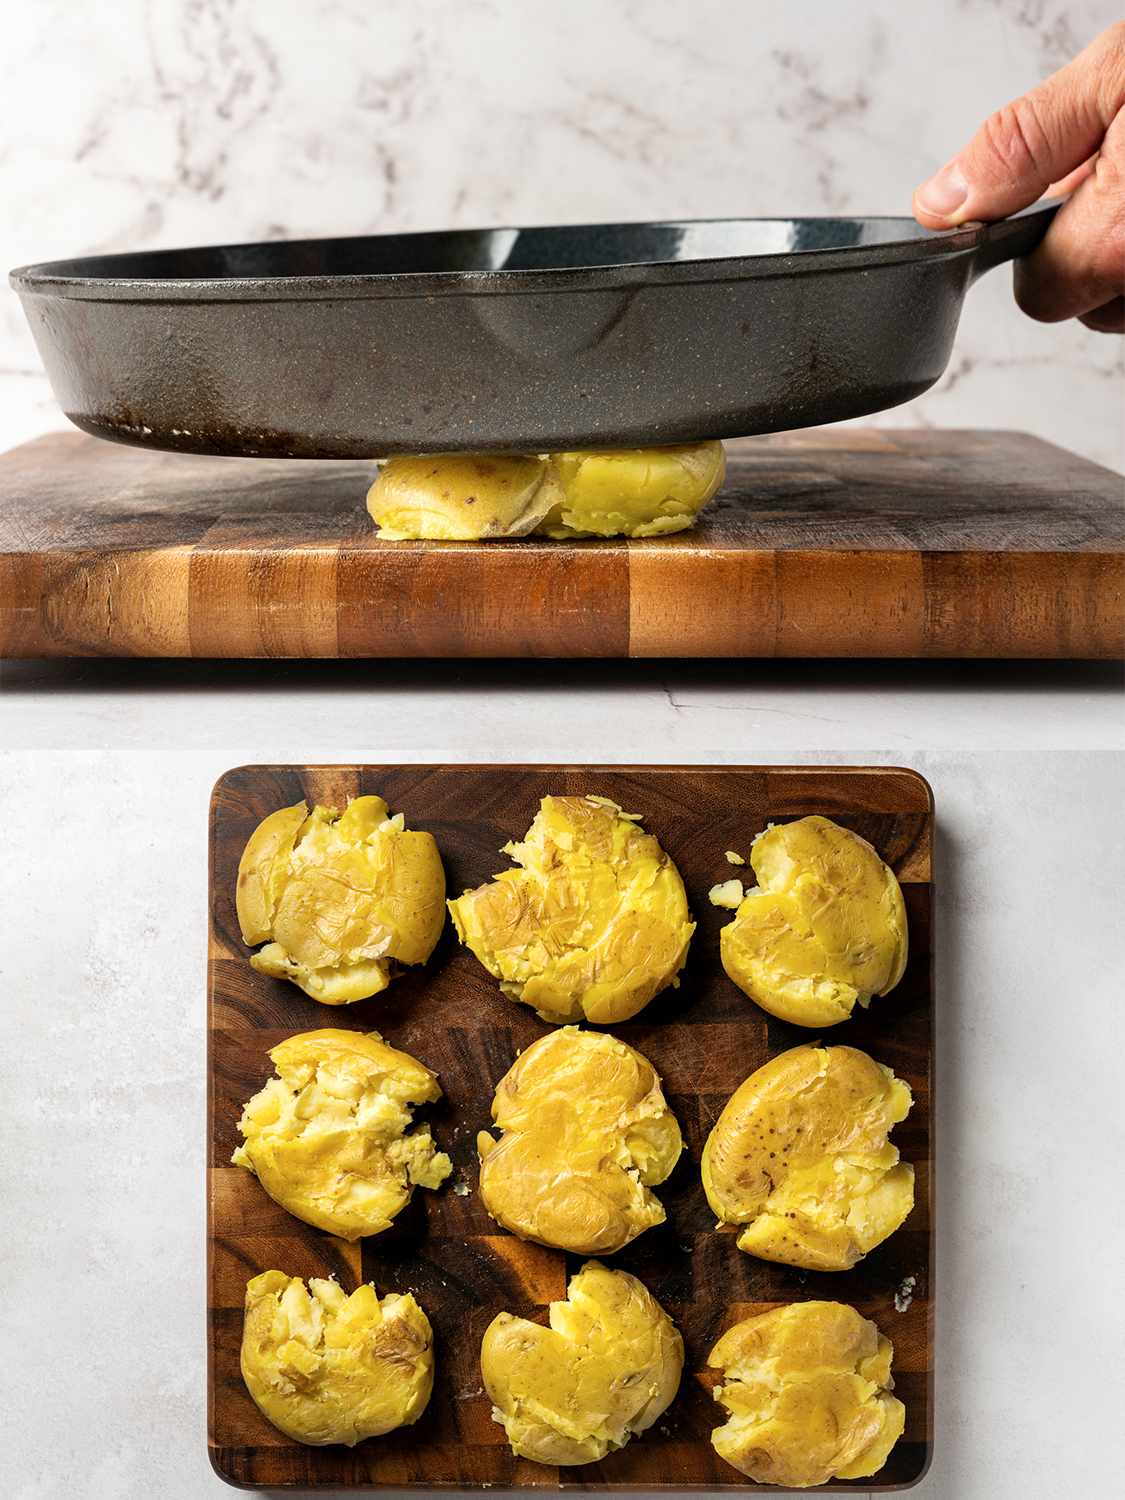 两幅图像的拼贴画。上图显示了一个放在木砧板上的煮土豆，被铸铁煎锅压扁。下面的图片显示了一个木制砧板，上面有9个碎土豆排成网格状。